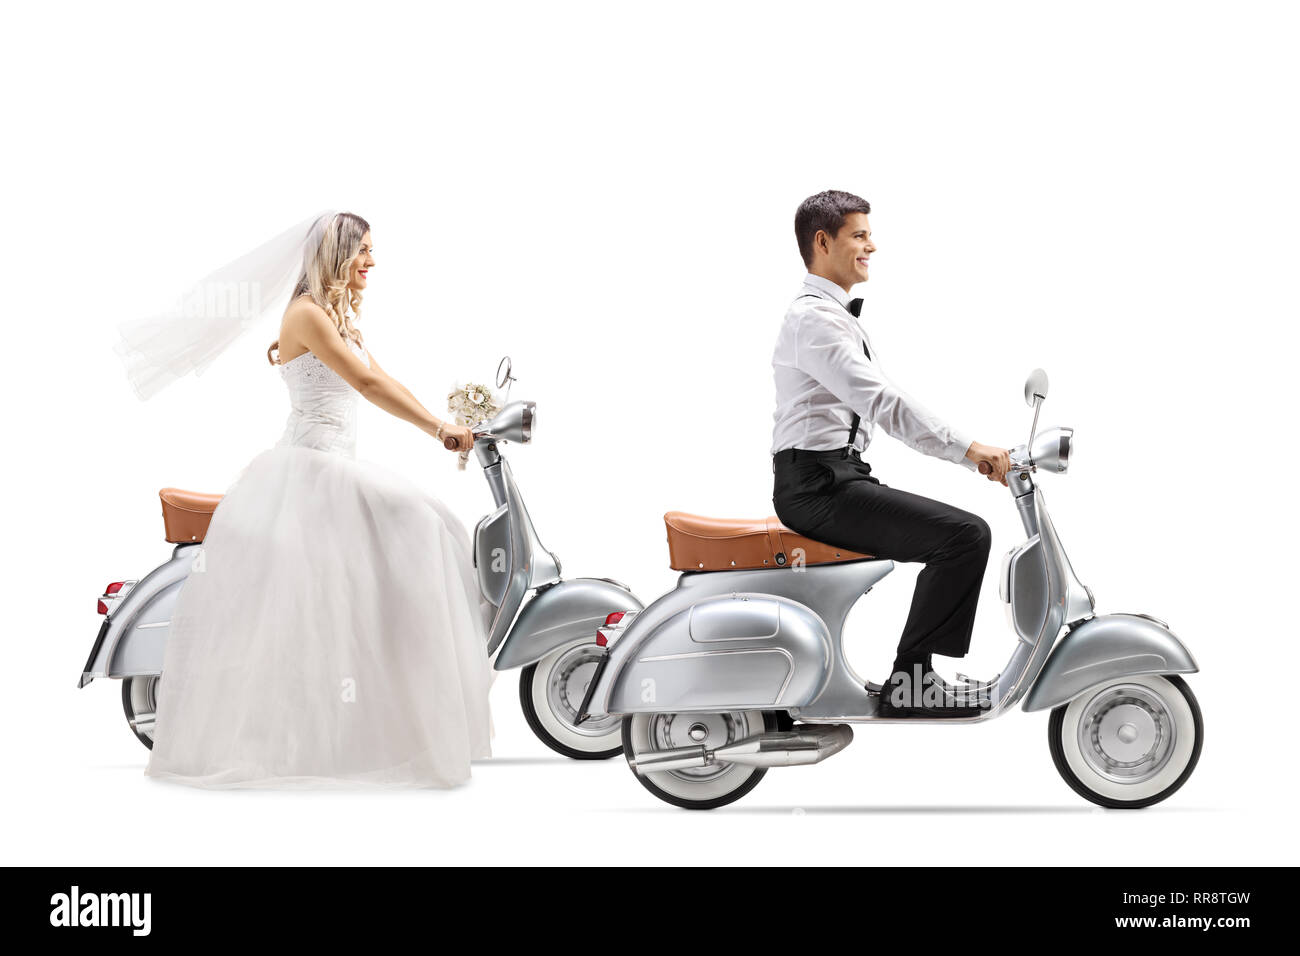 Volle Länge Profil Schuß einer Braut und Bräutigam, Oldtimer Roller auf weißem Hintergrund Stockfoto